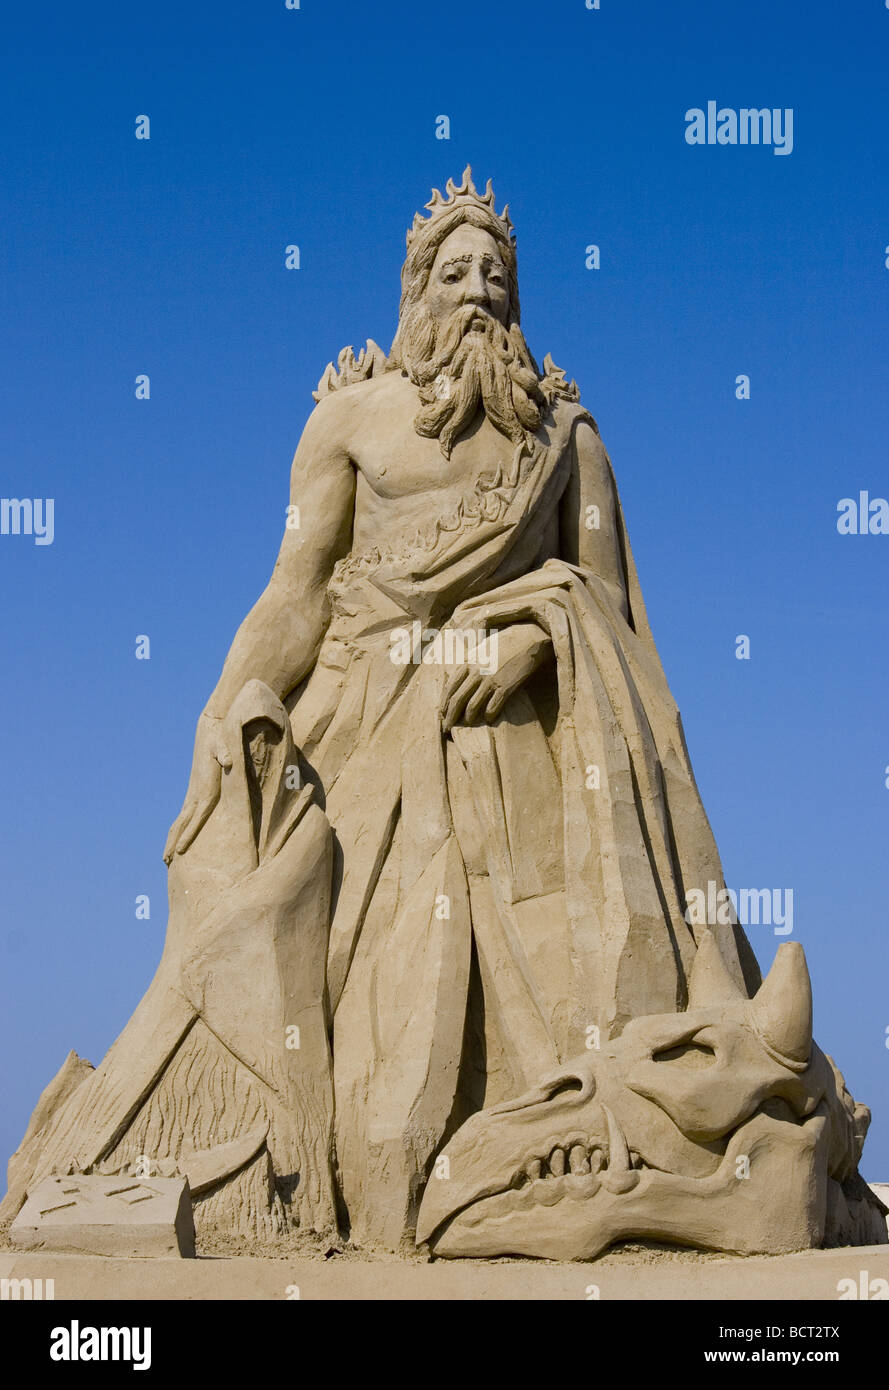 Sculpture de sable de l'Hadès, maître des enfers et seigneur de la mort dans la mythologie grecque Banque D'Images